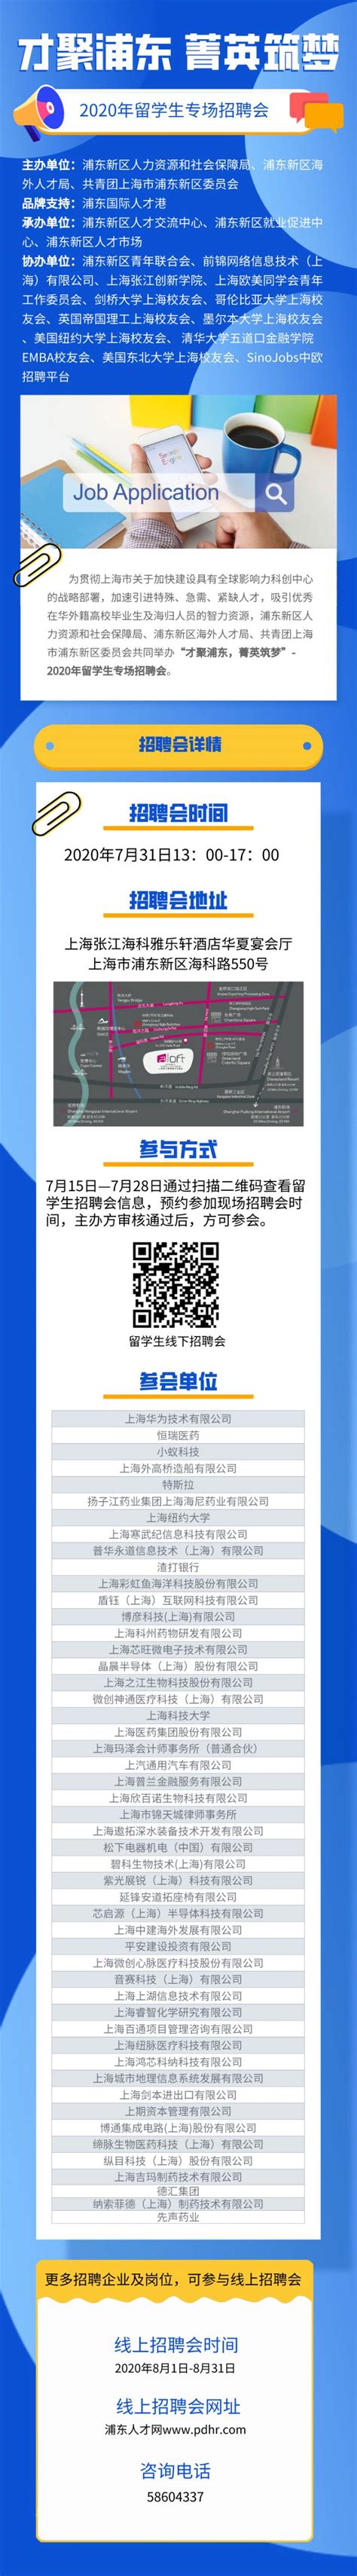 2020年上海留学生专场招聘会7月31日举办- 上海本地宝